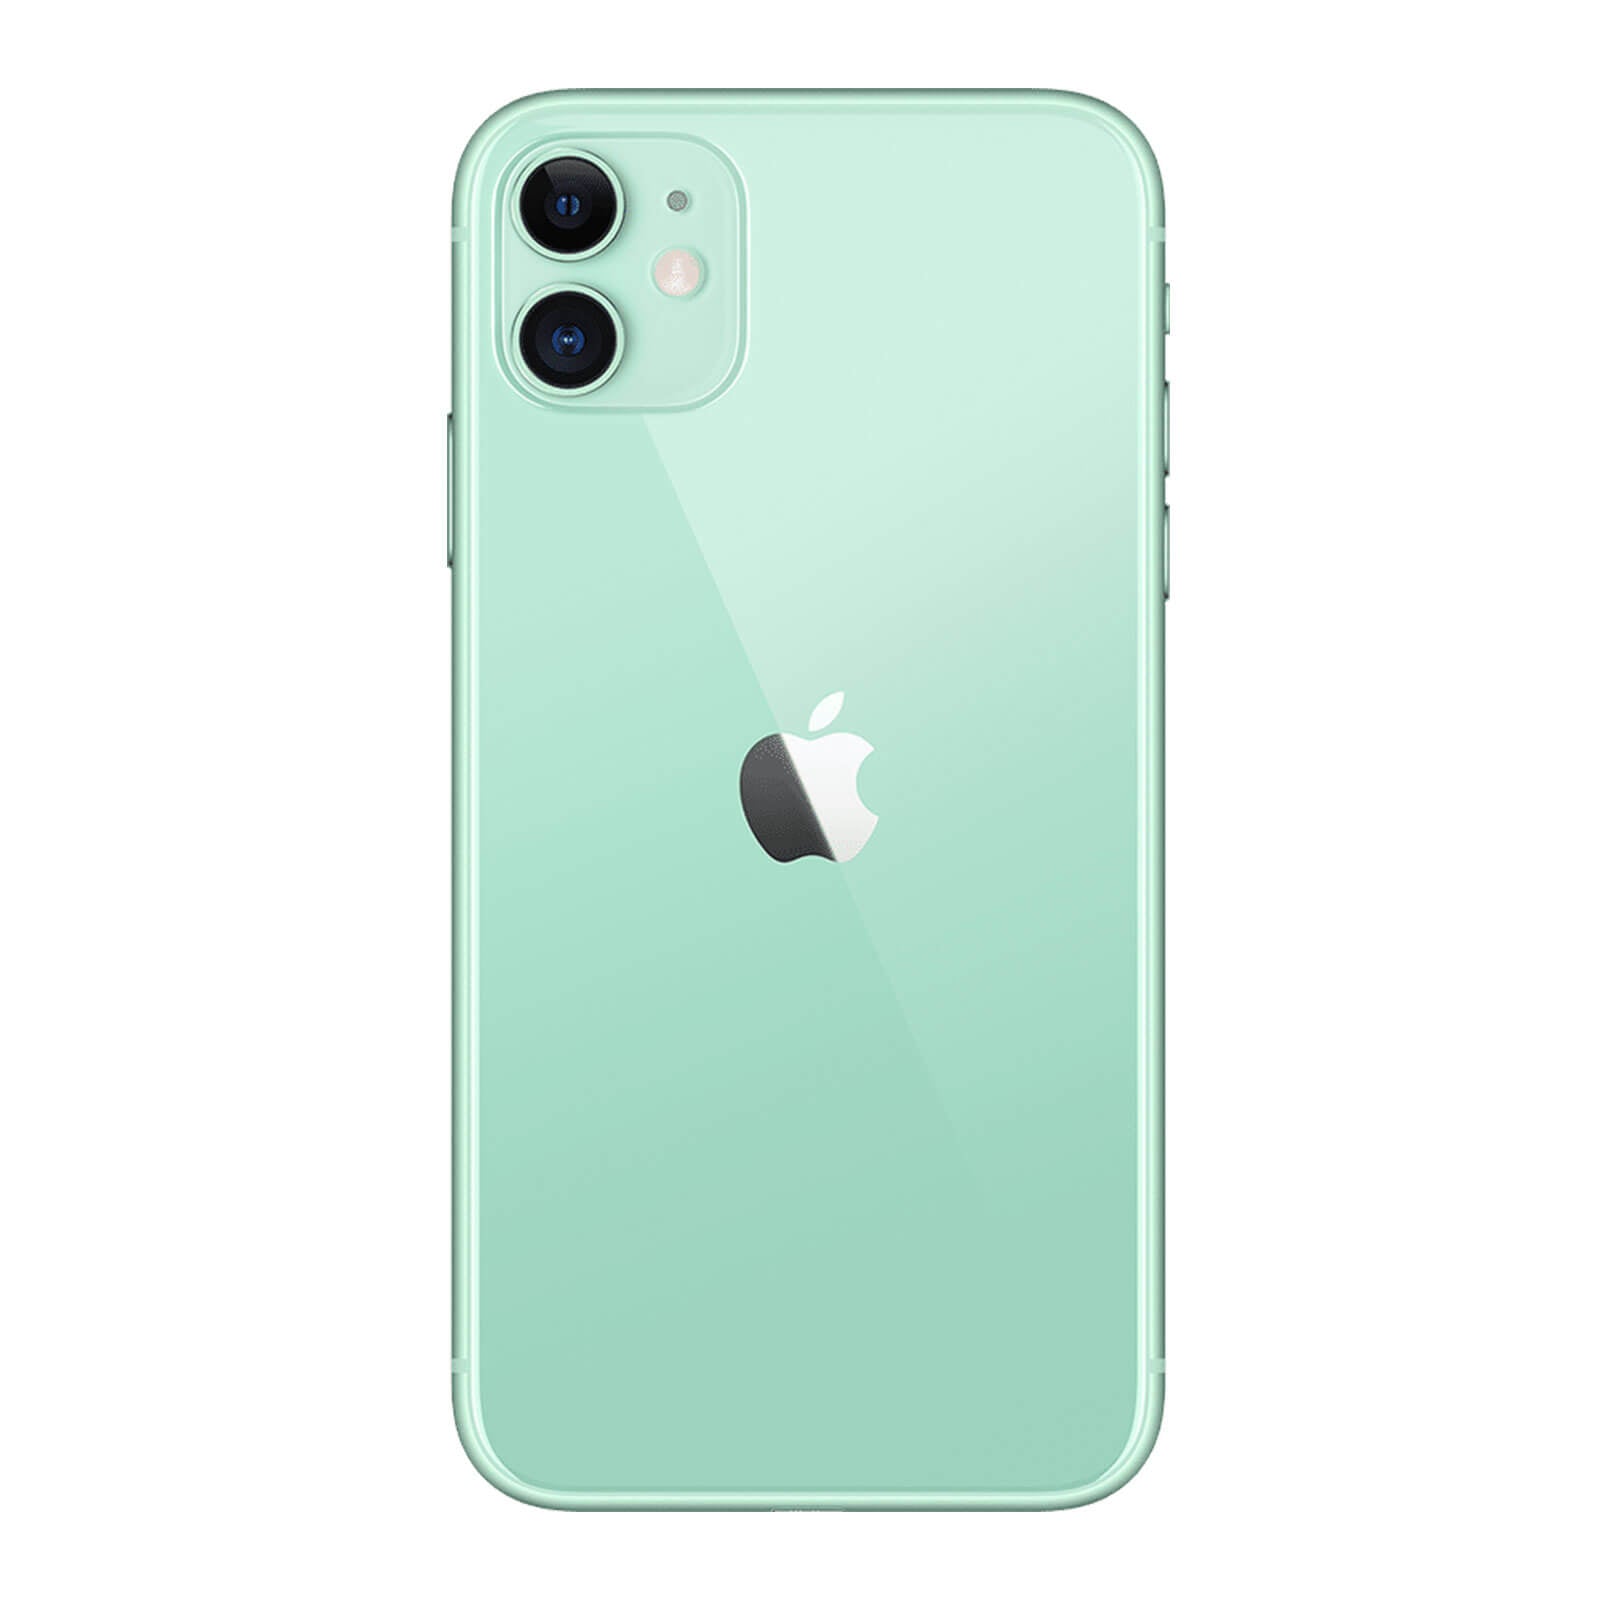 Apple iPhone 11 64GB Green Fair - Sprint